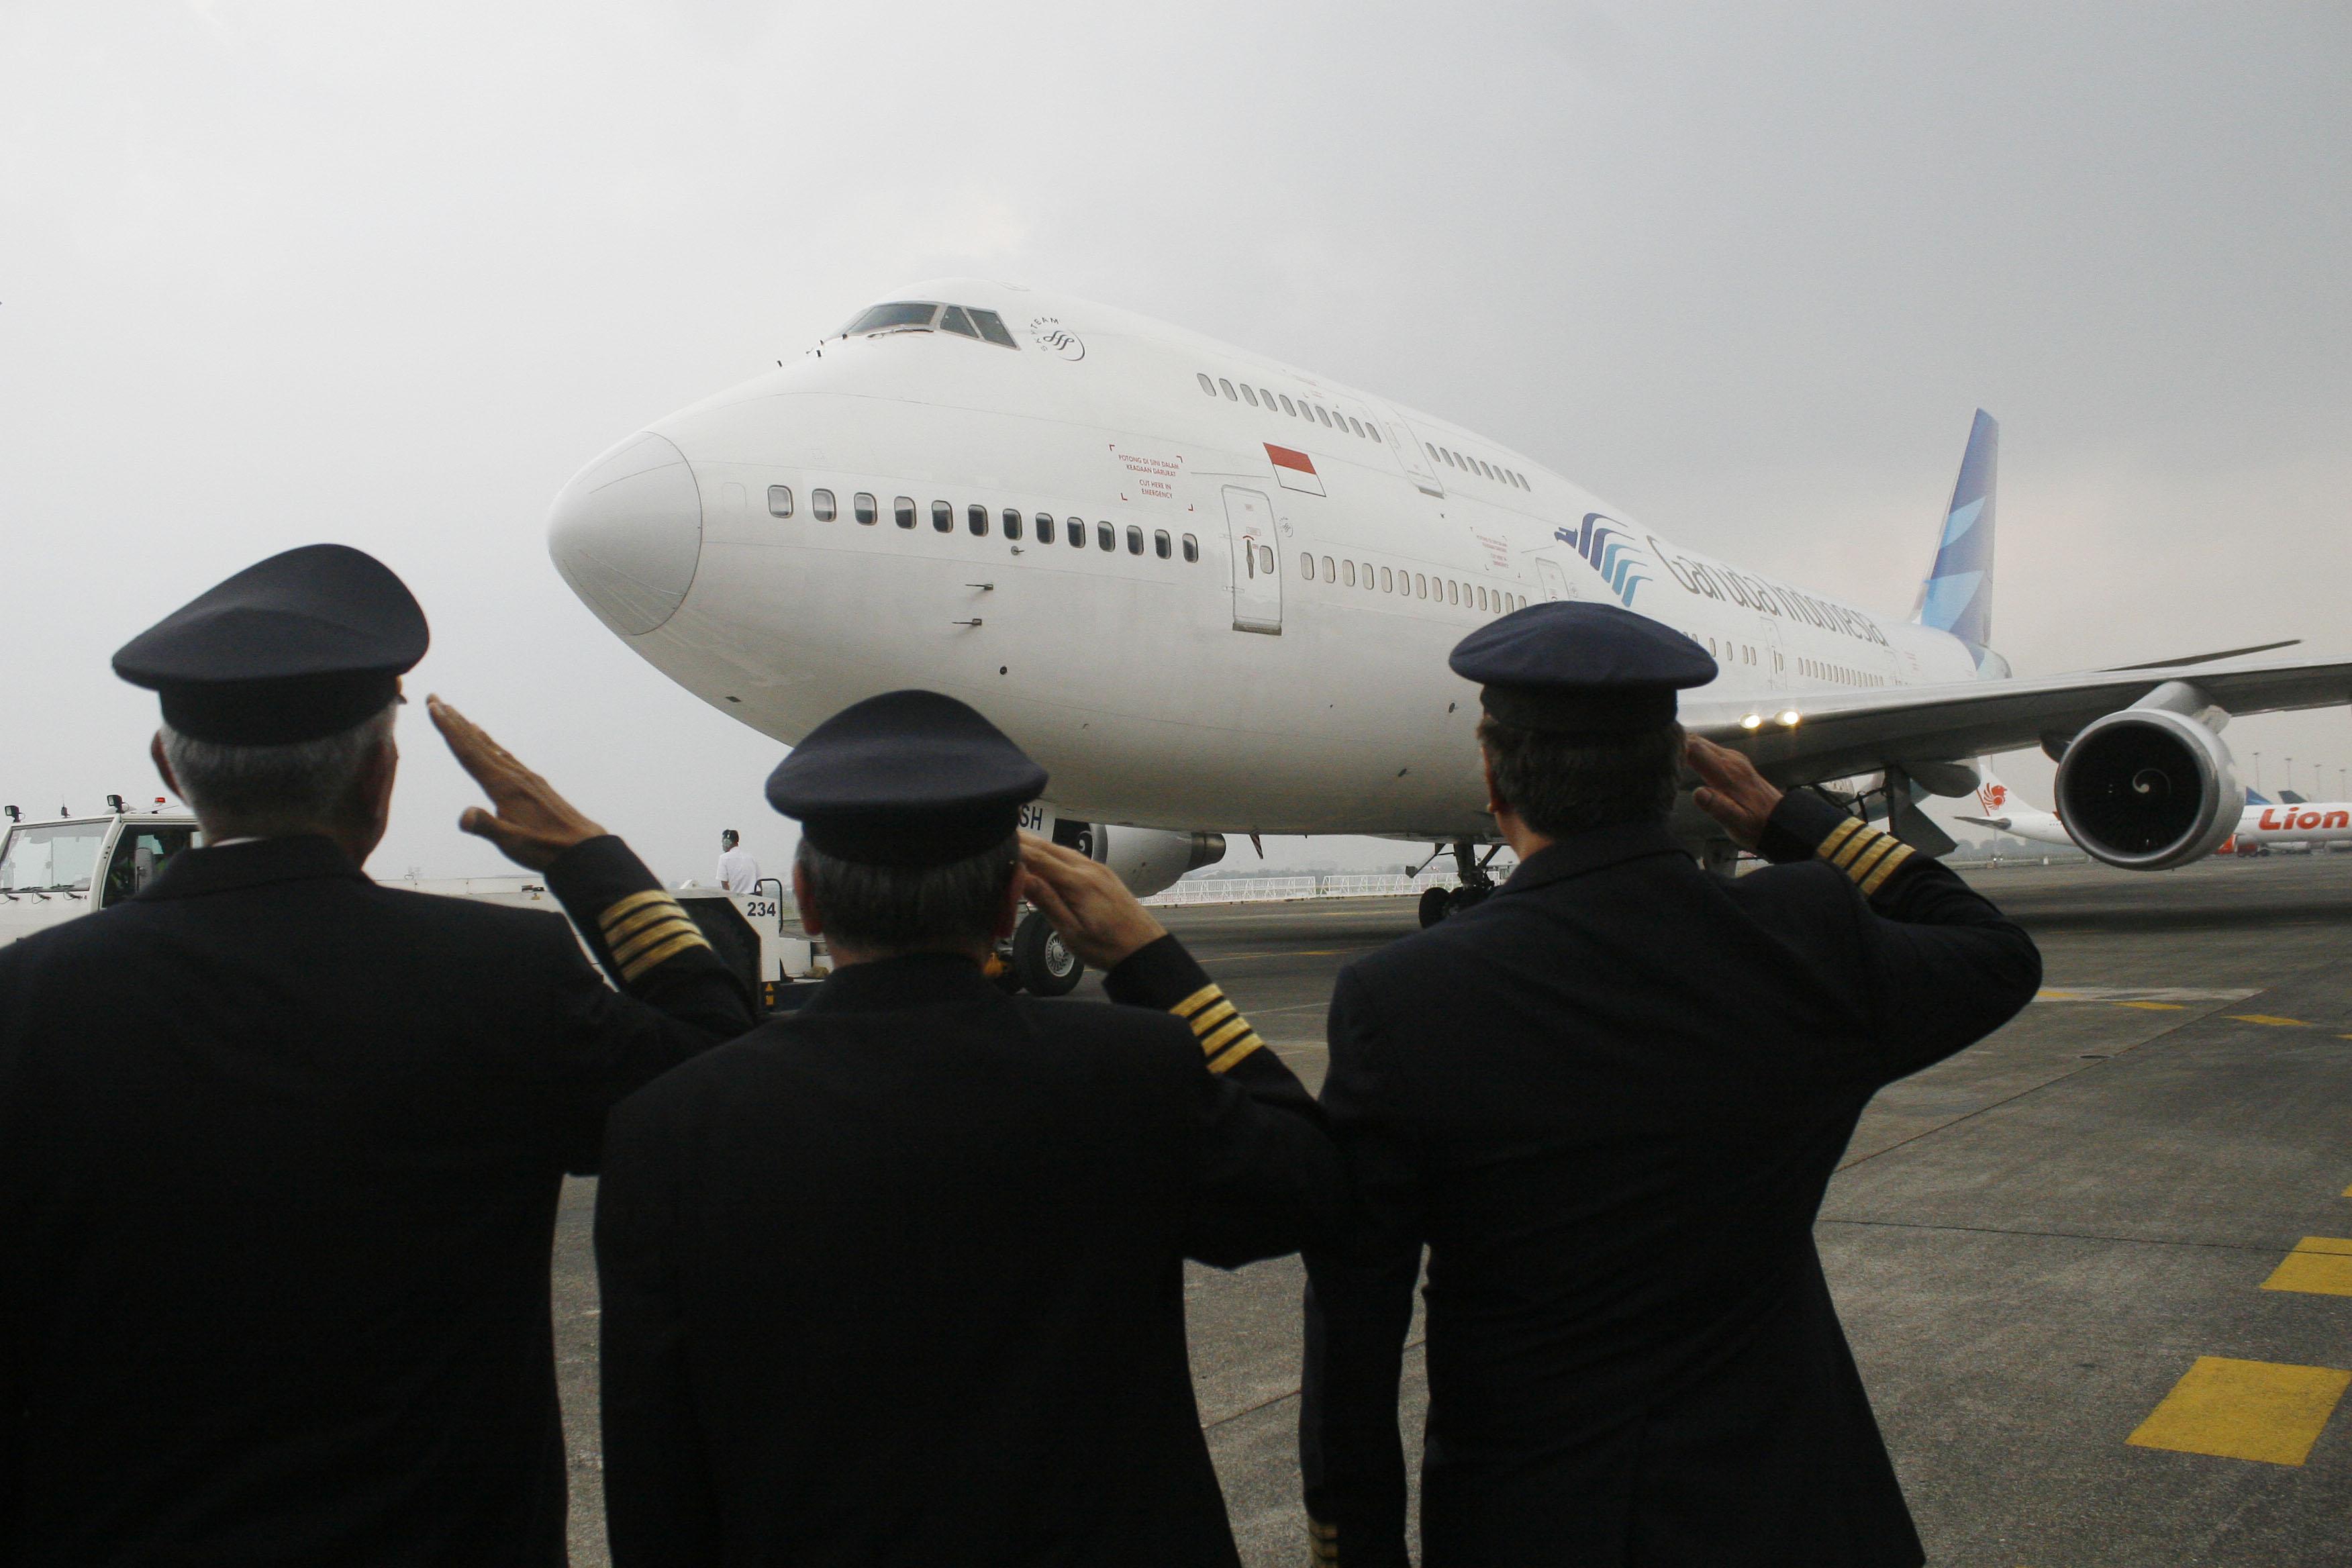 Catat Rugi, Karyawan dan Pilot Garuda Minta Pengurangan Direksi ke Menteri BUMN